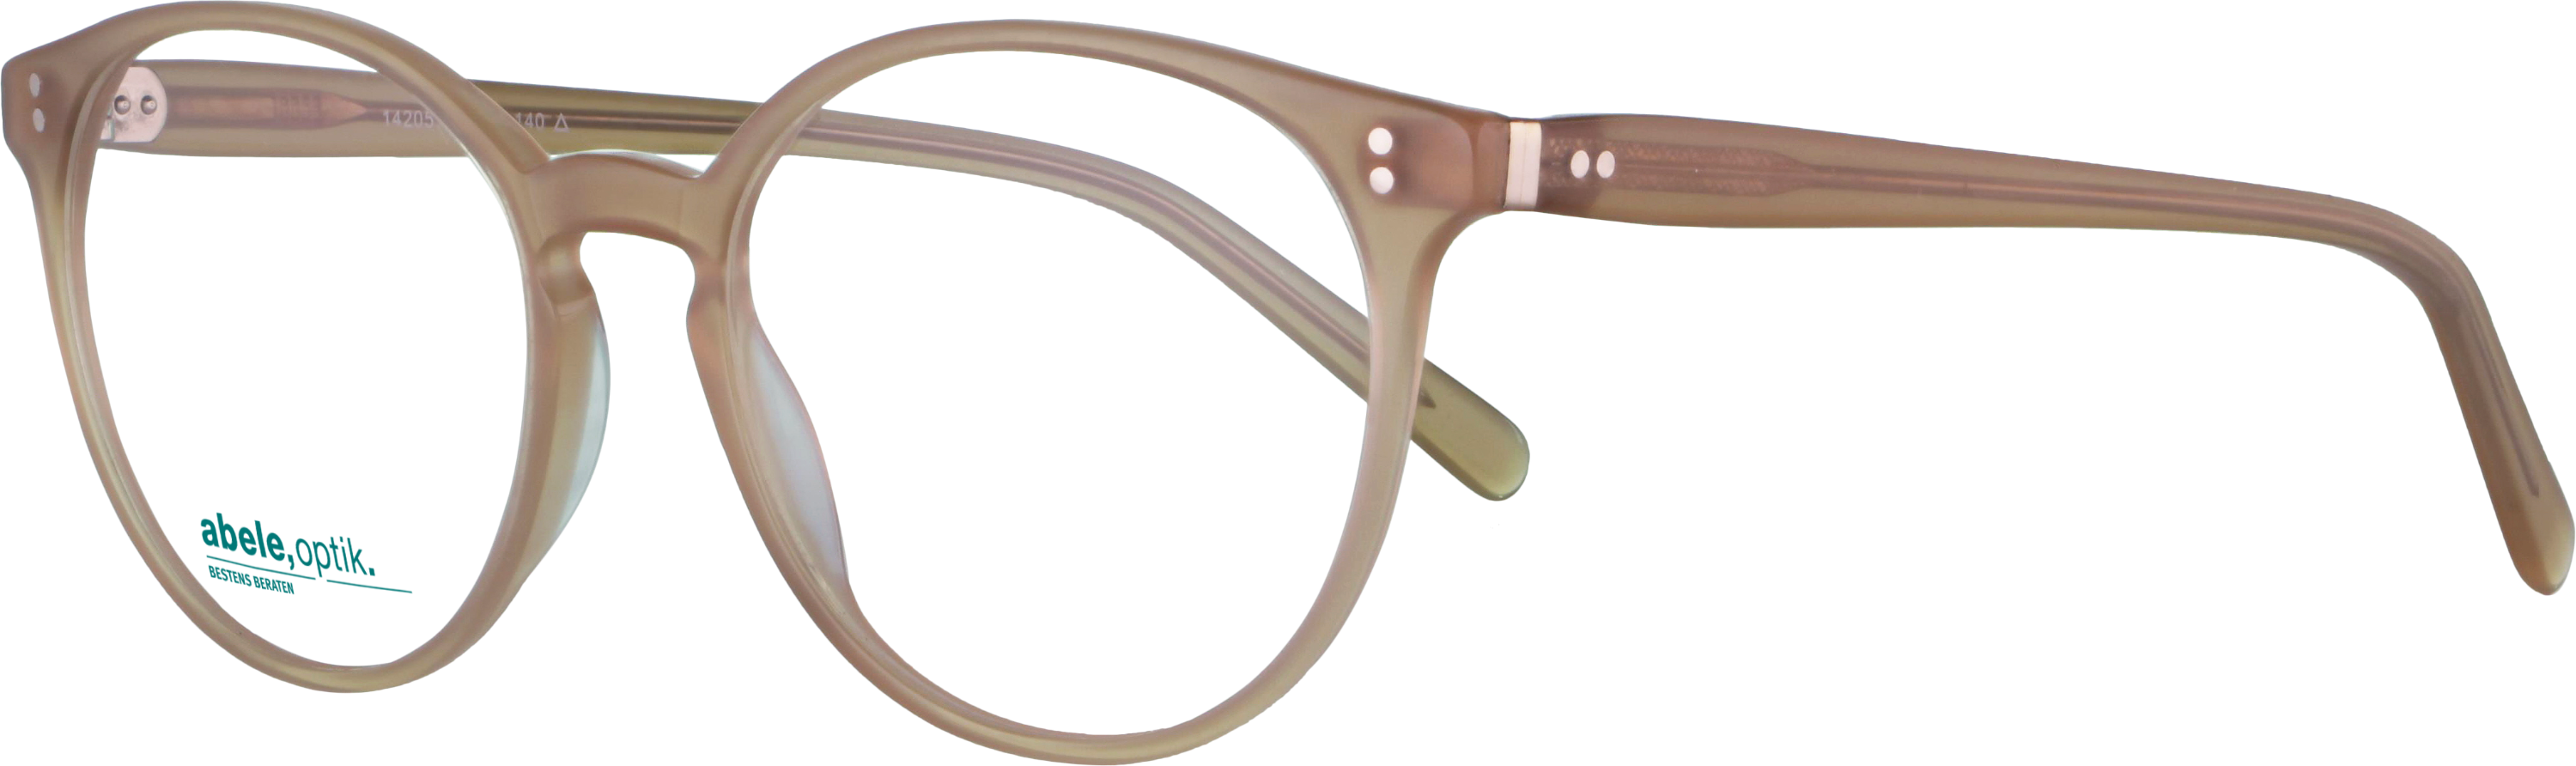 Das Bild zeigt die Korrektionsbrille 142051 von der Marke Abele Optik in beige.